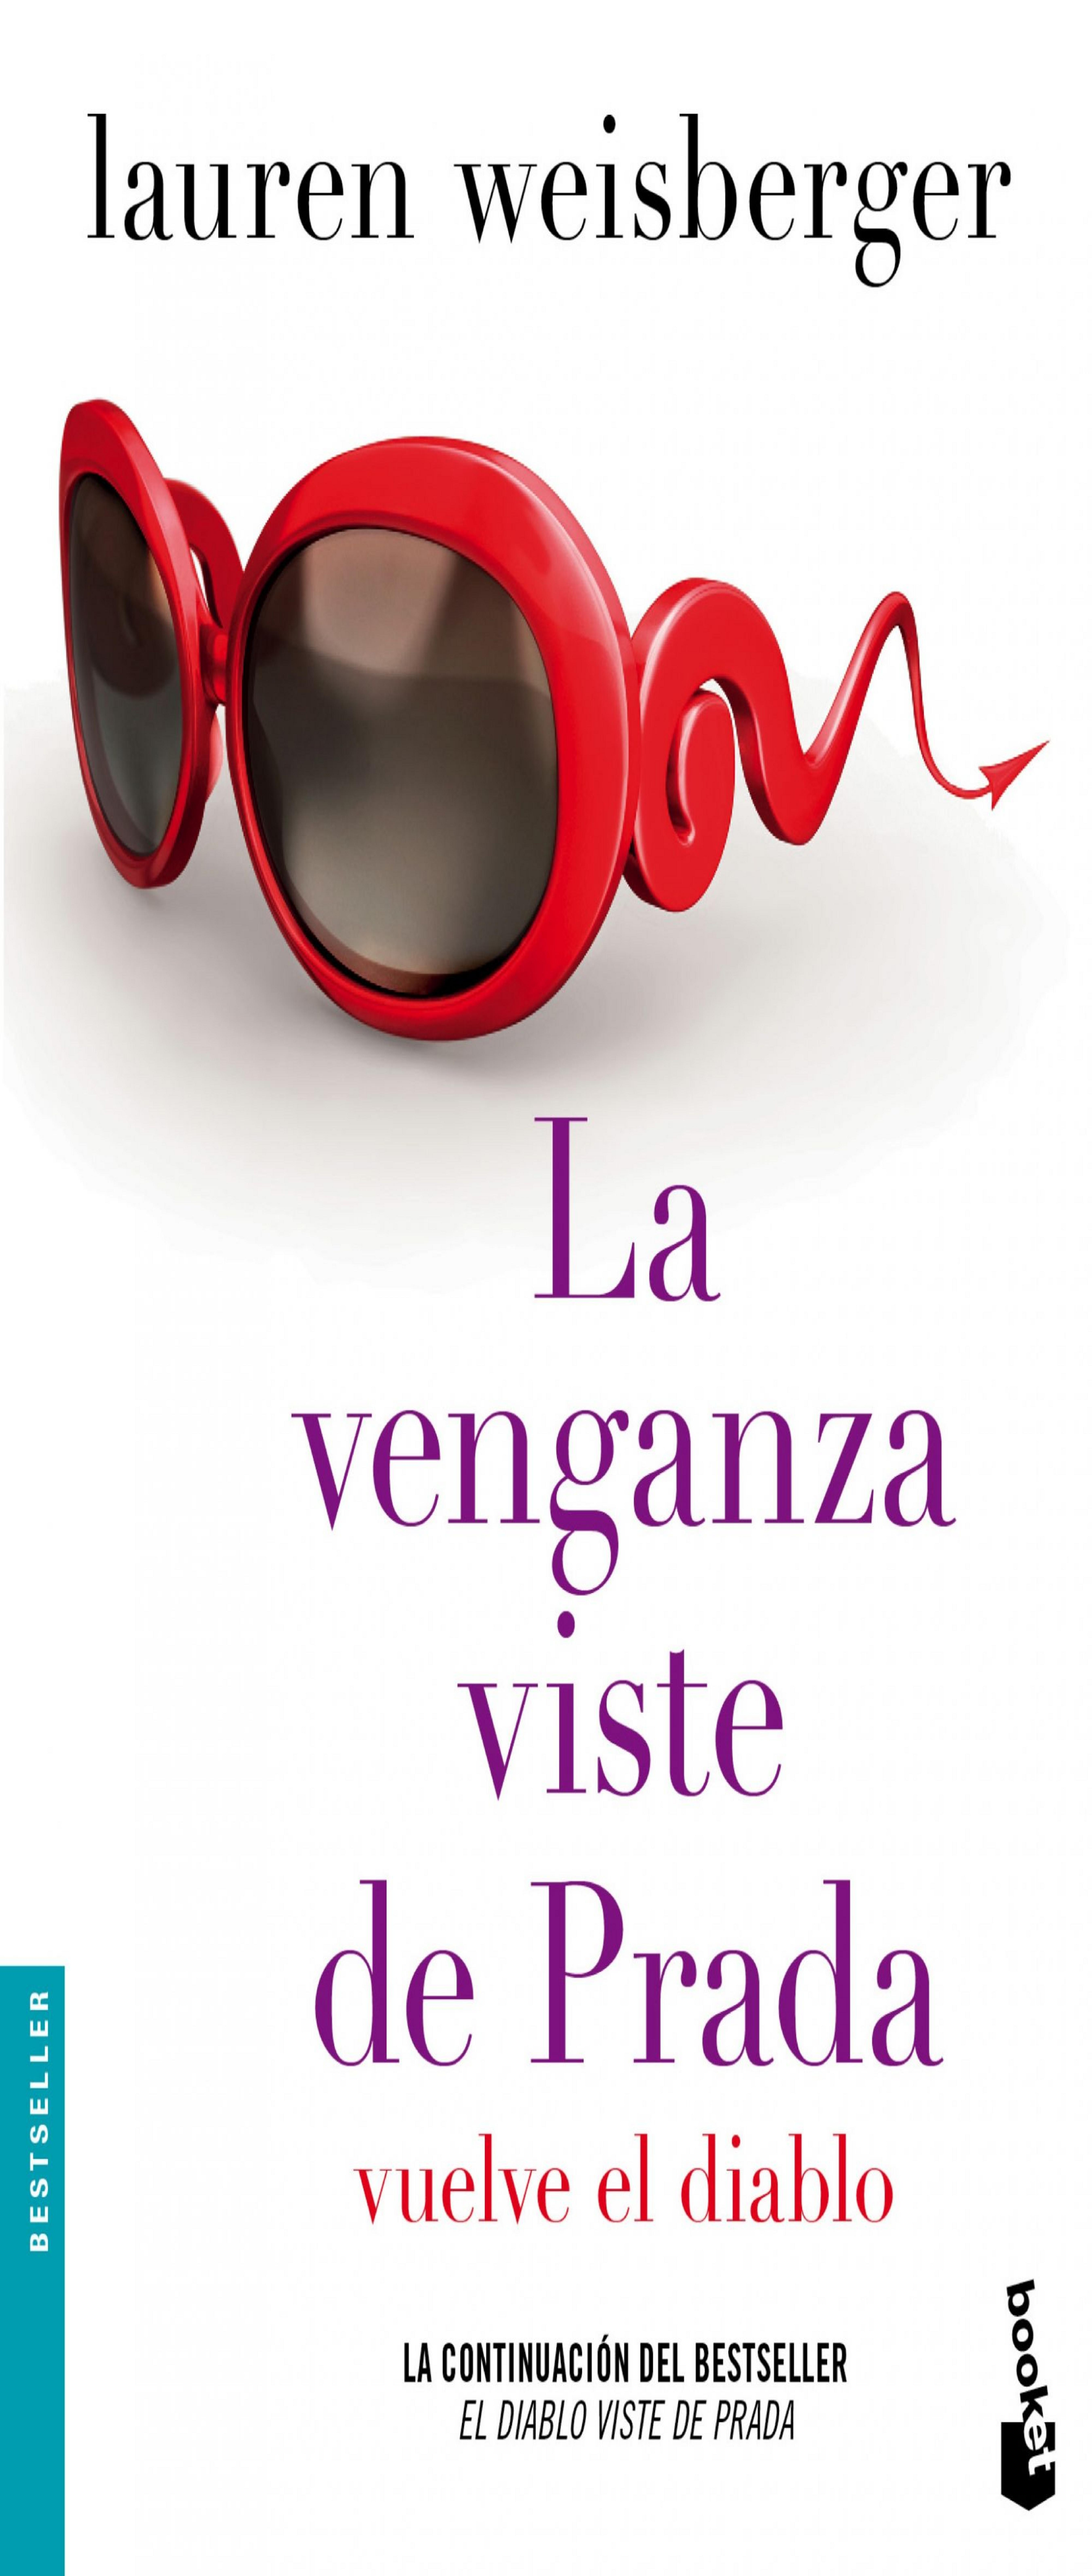 VENGANZA VISTE DE PRADA, LA: VUELVE EL DIABLO - Librería IDIOMATIKA